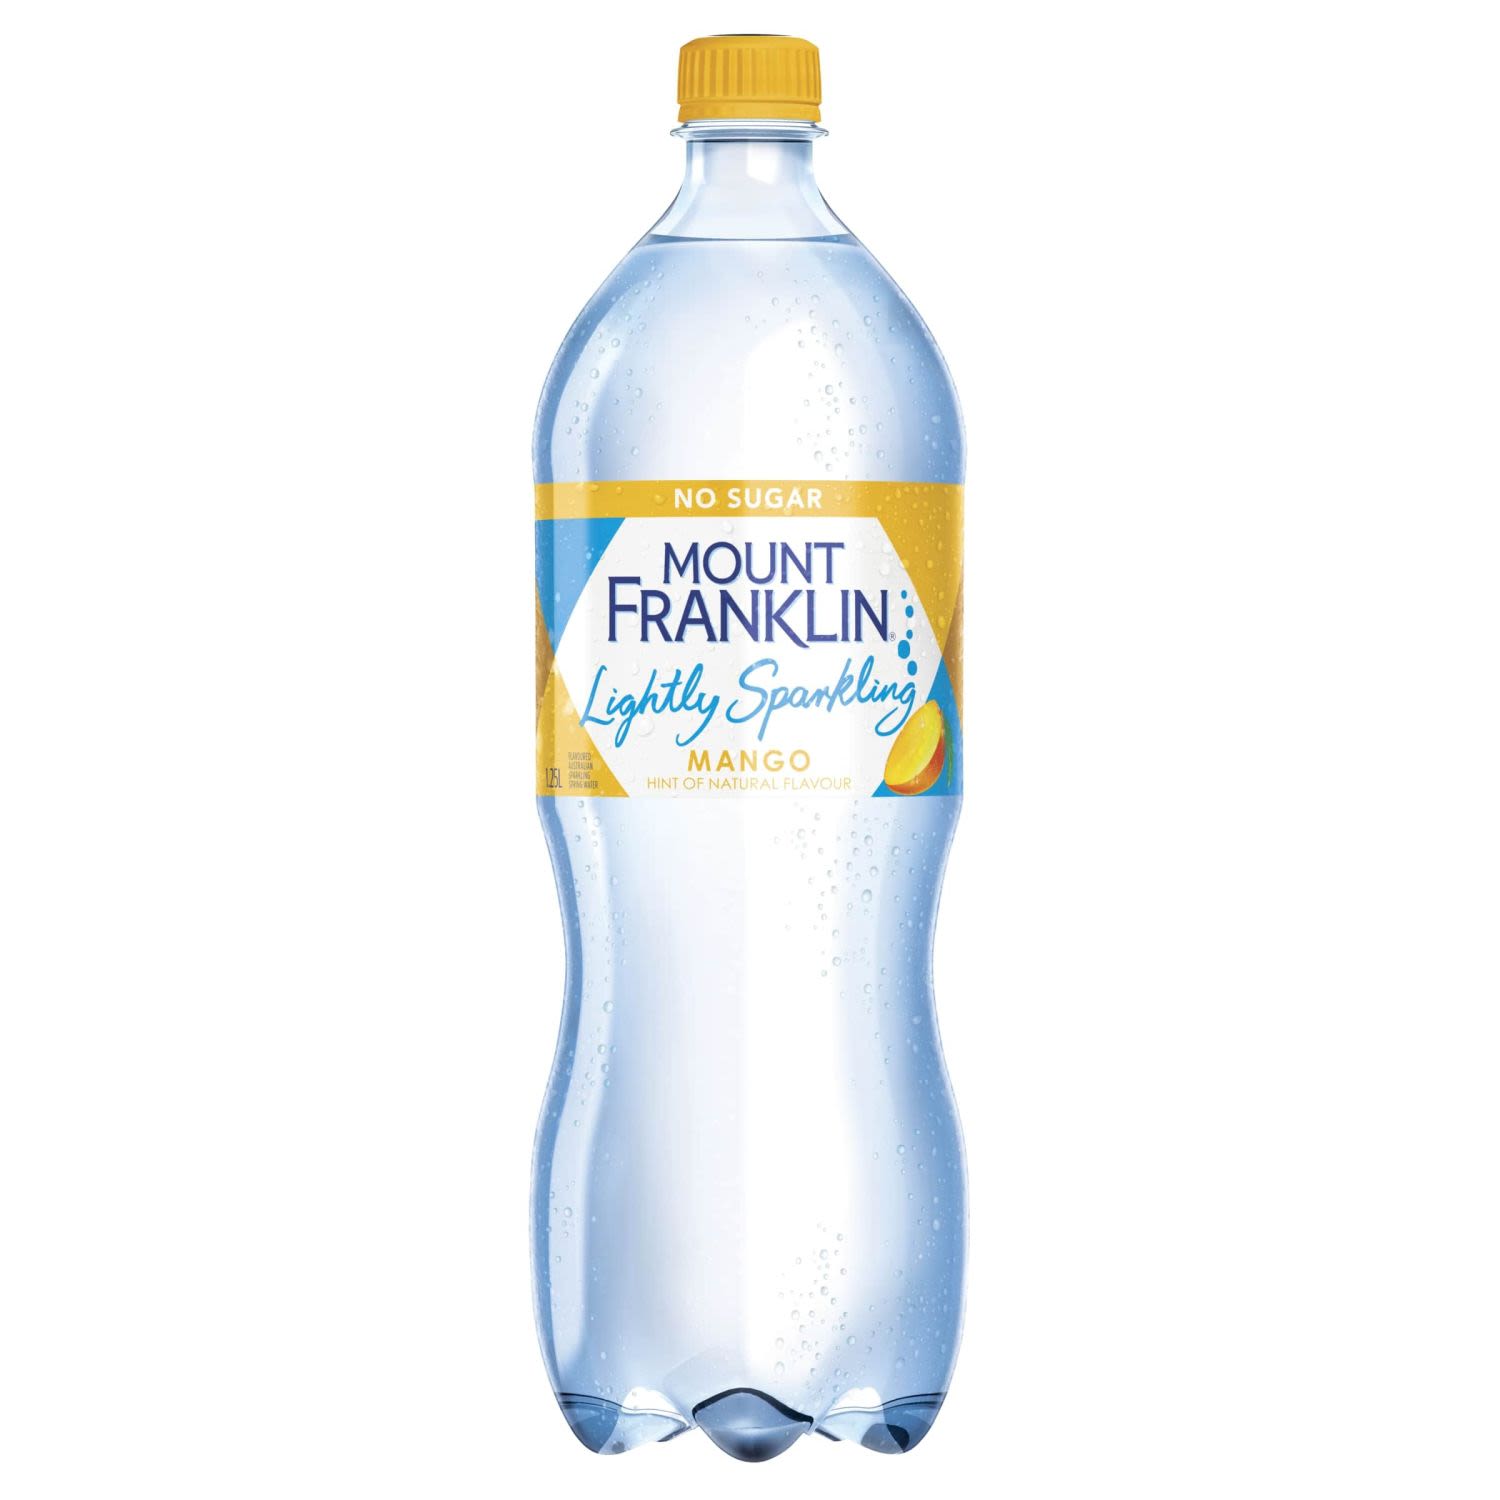 Mount Franklin Lightly Sparkling water Mango Bottle , 1.25 Litre